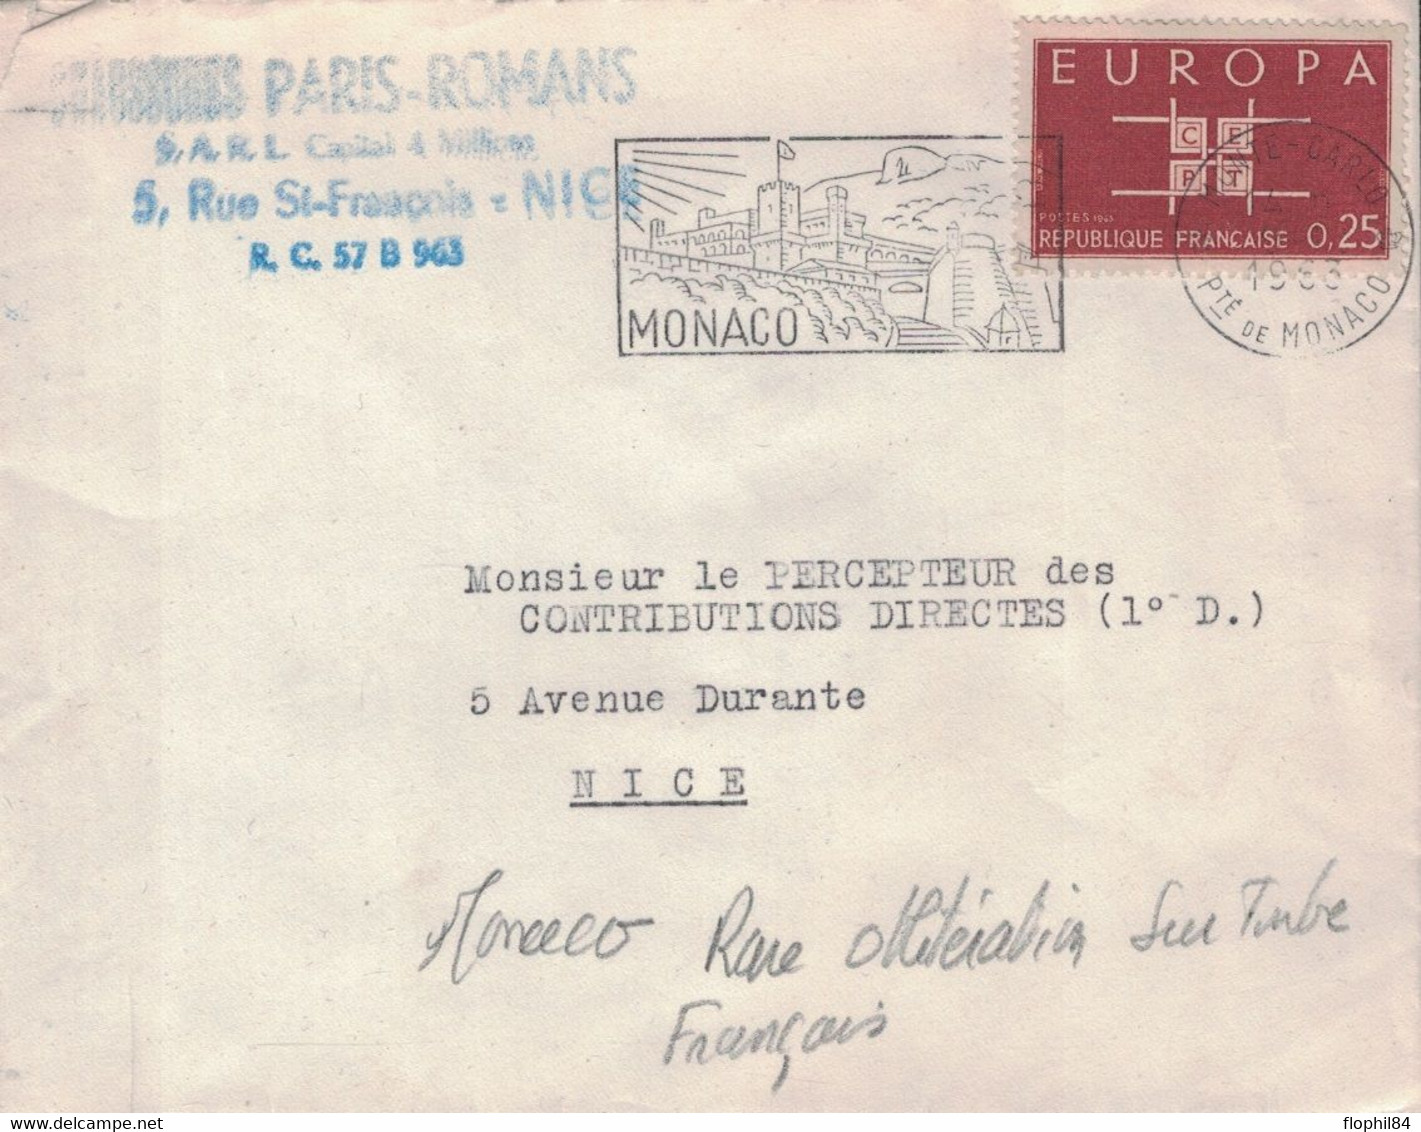 MONACO - TIMBRE DE FRANCE EUROPA 0.25C - ANNULATION FLAMME DE MONACO - 14-2-1963 - PEU COURANT. - Covers & Documents